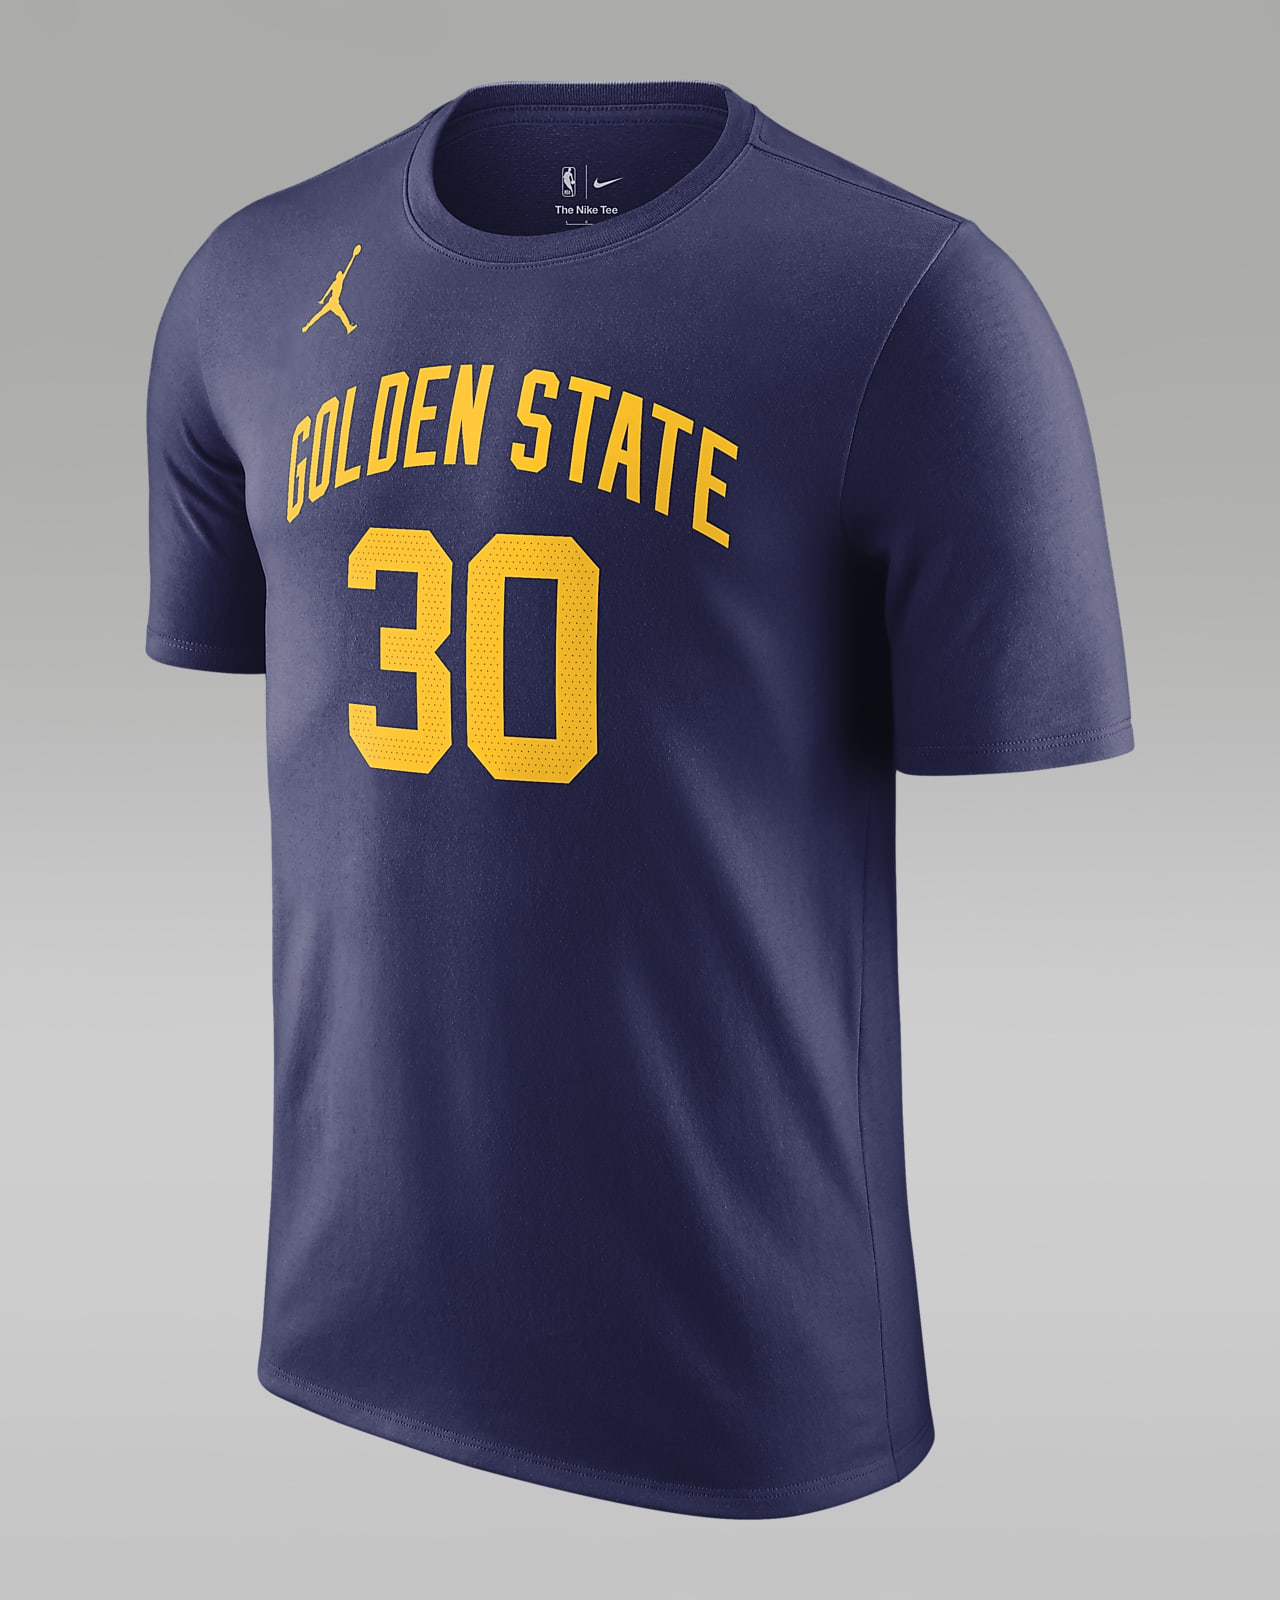 Golden State Warriors Statement Edition Men's Jordan NBA T-Shirt